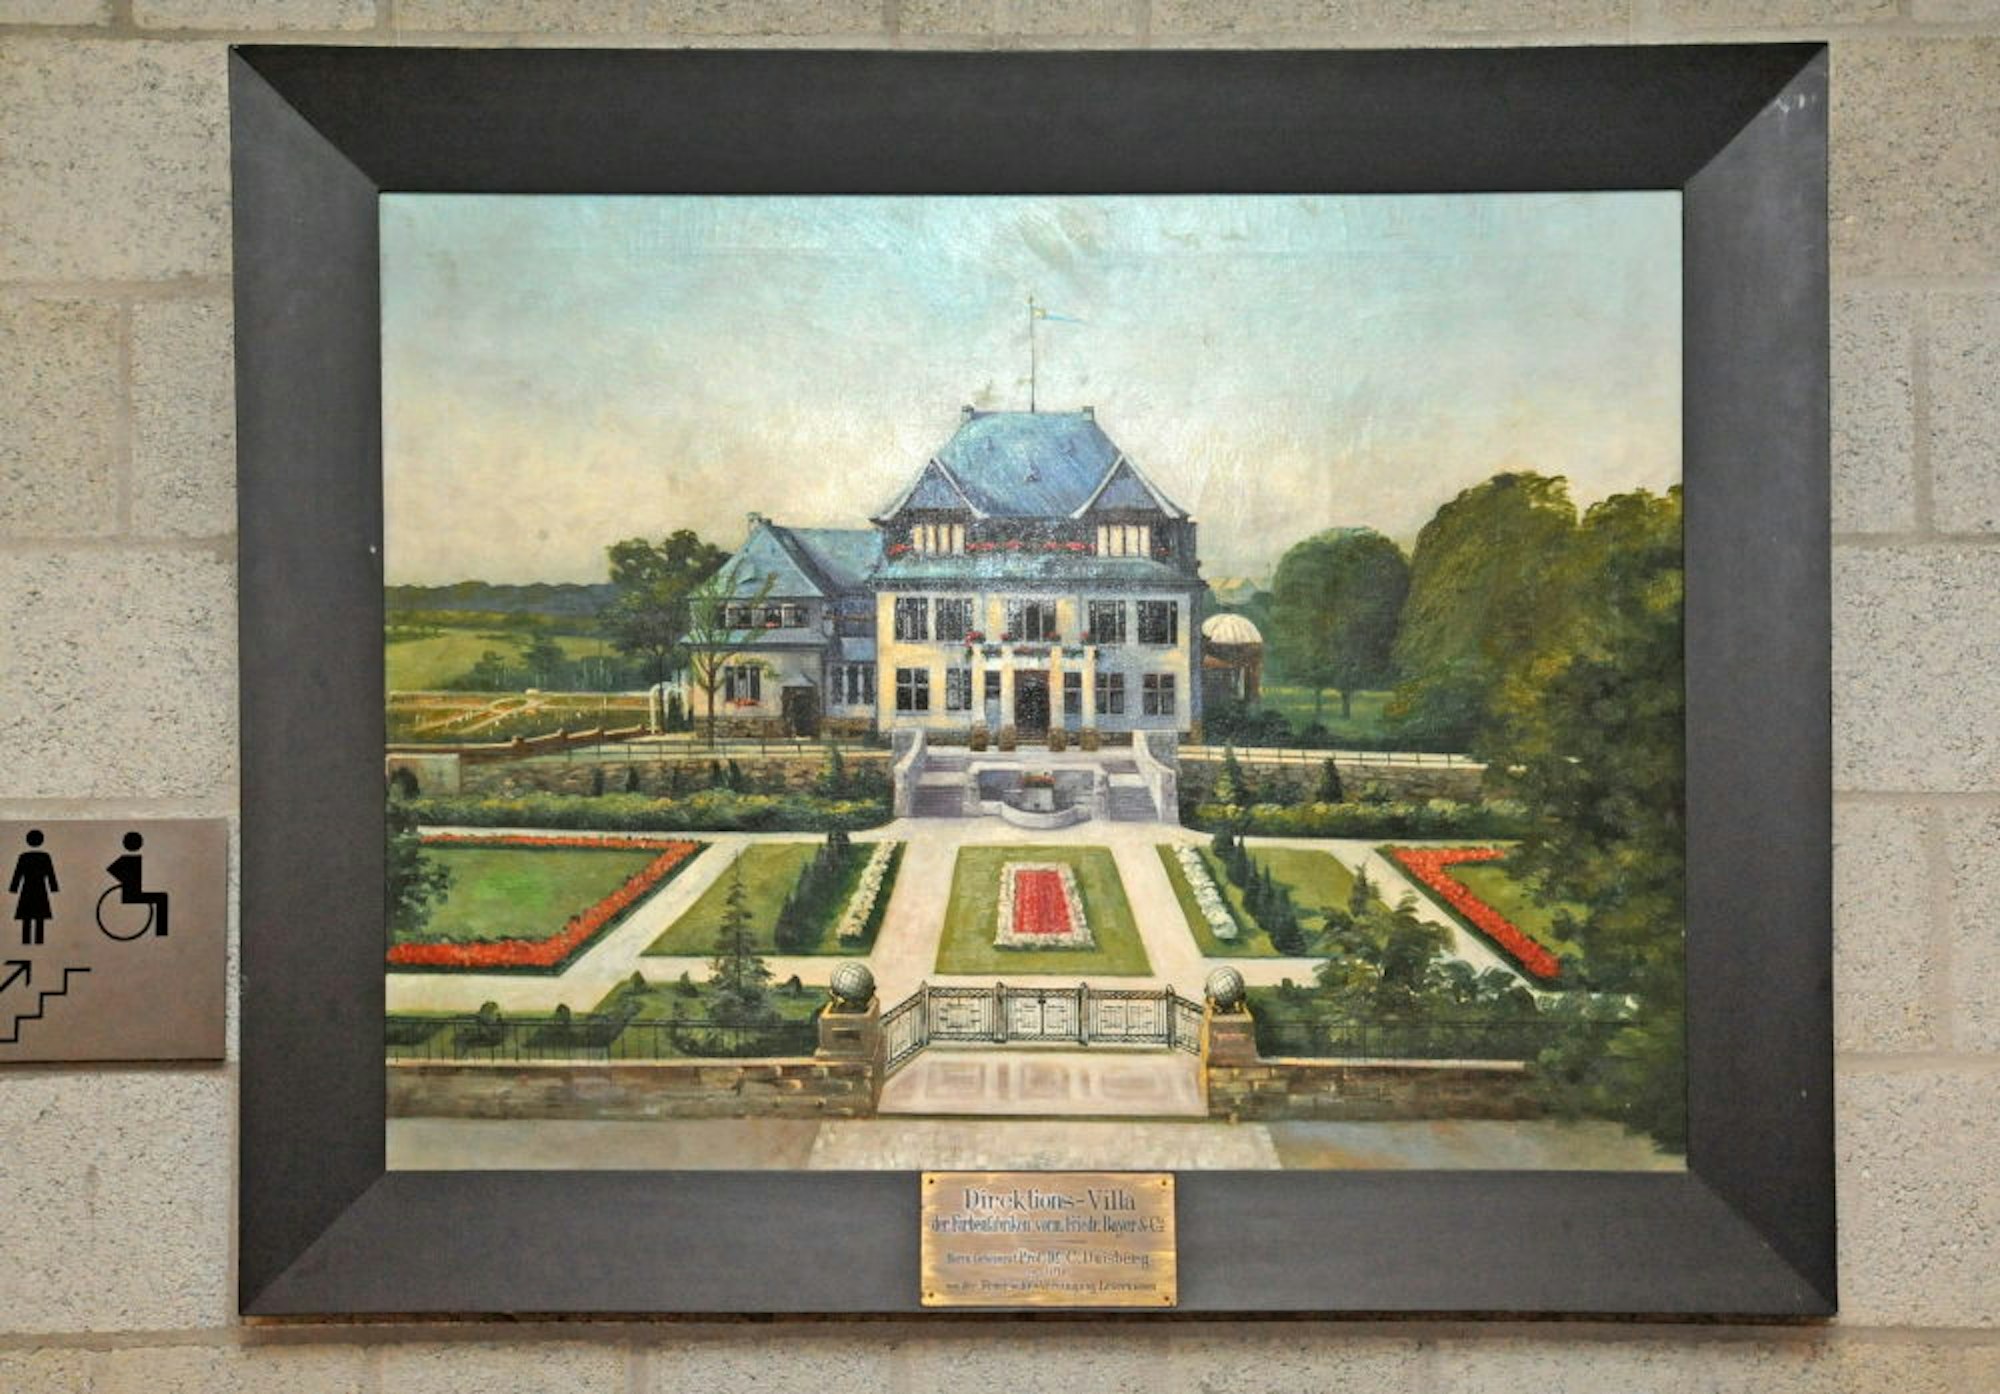 Ein Bild der alten Villa Duisberg.